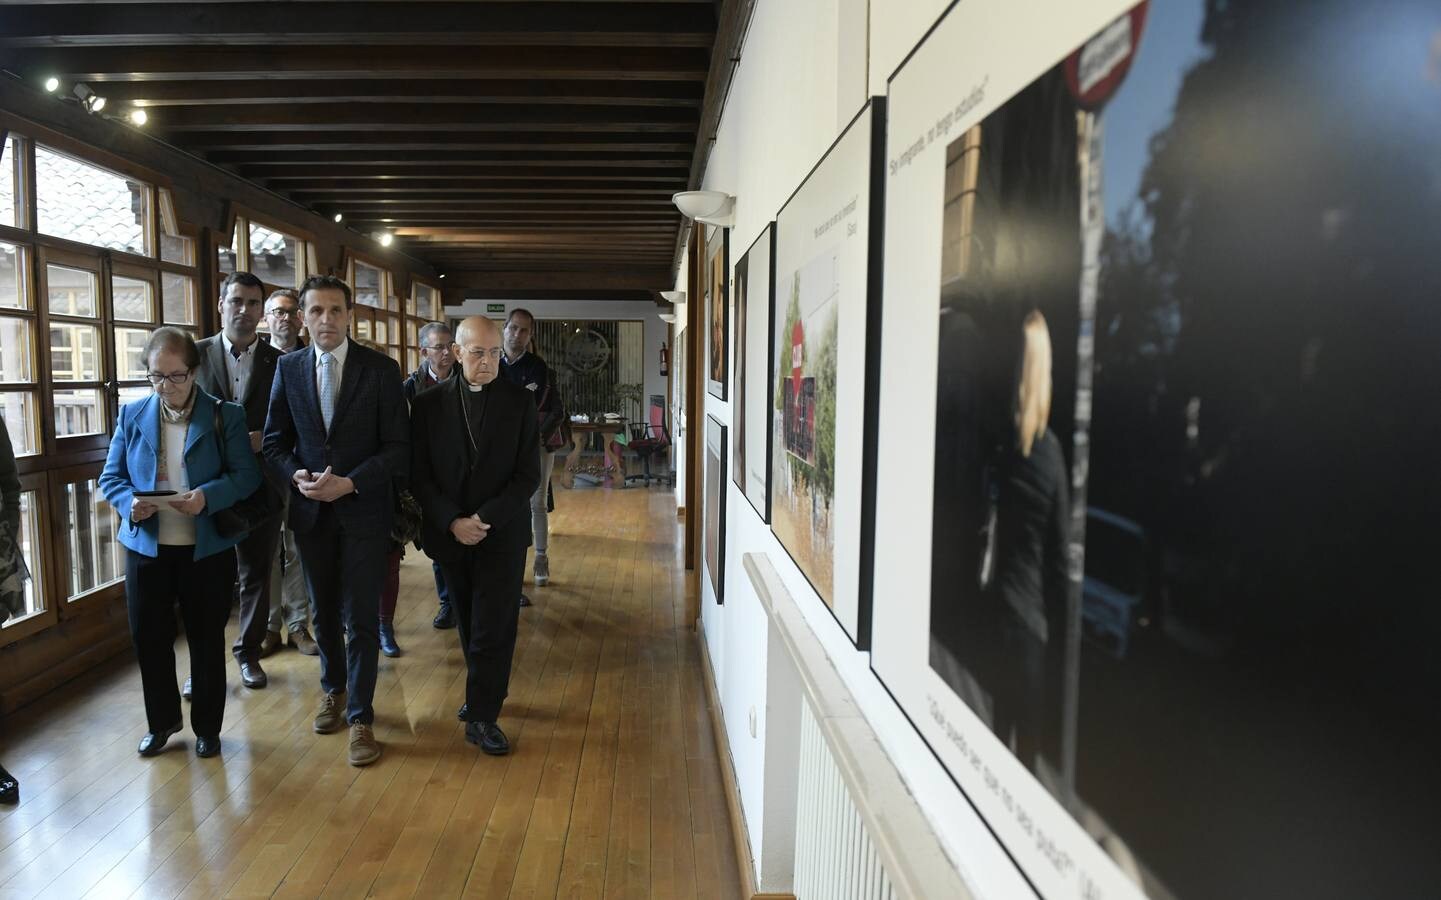 El presidente de la Diputación, Conrado Íscar, y el arzobispo de Valladolid, Ricardo Blázquez, presentan la muestra